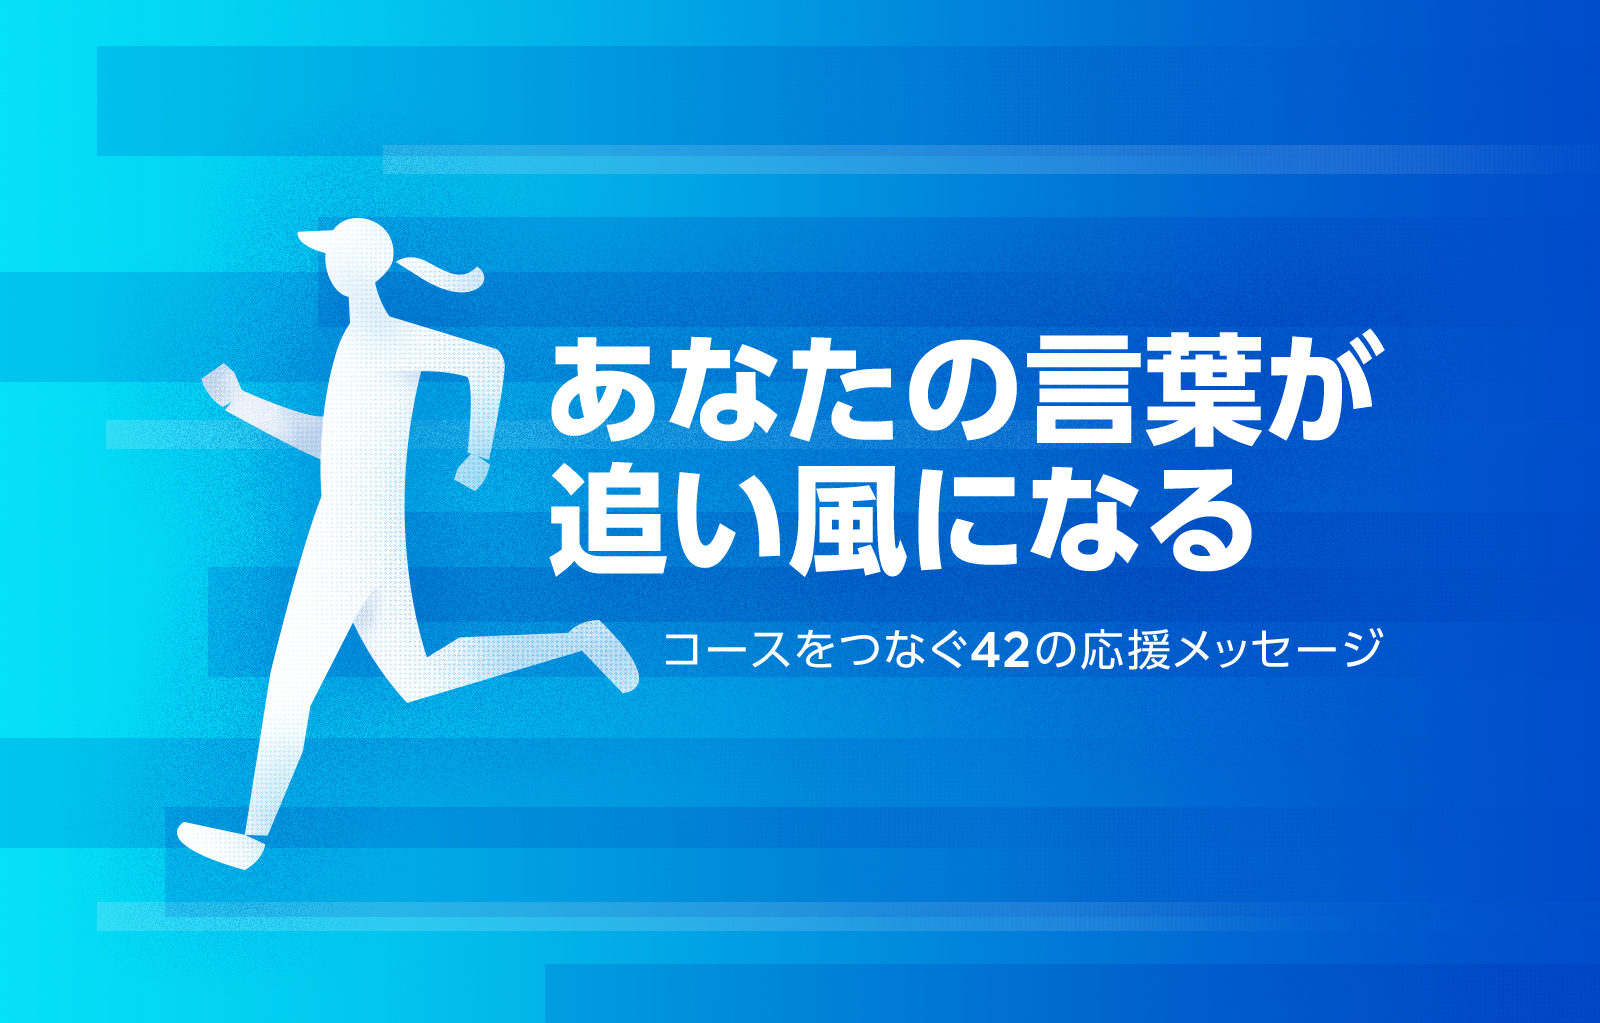 あなたの言葉が 追い風になる 全国から ランナーへの応援メッセージ大募集 コラム Effect Fukuoka Running Standard